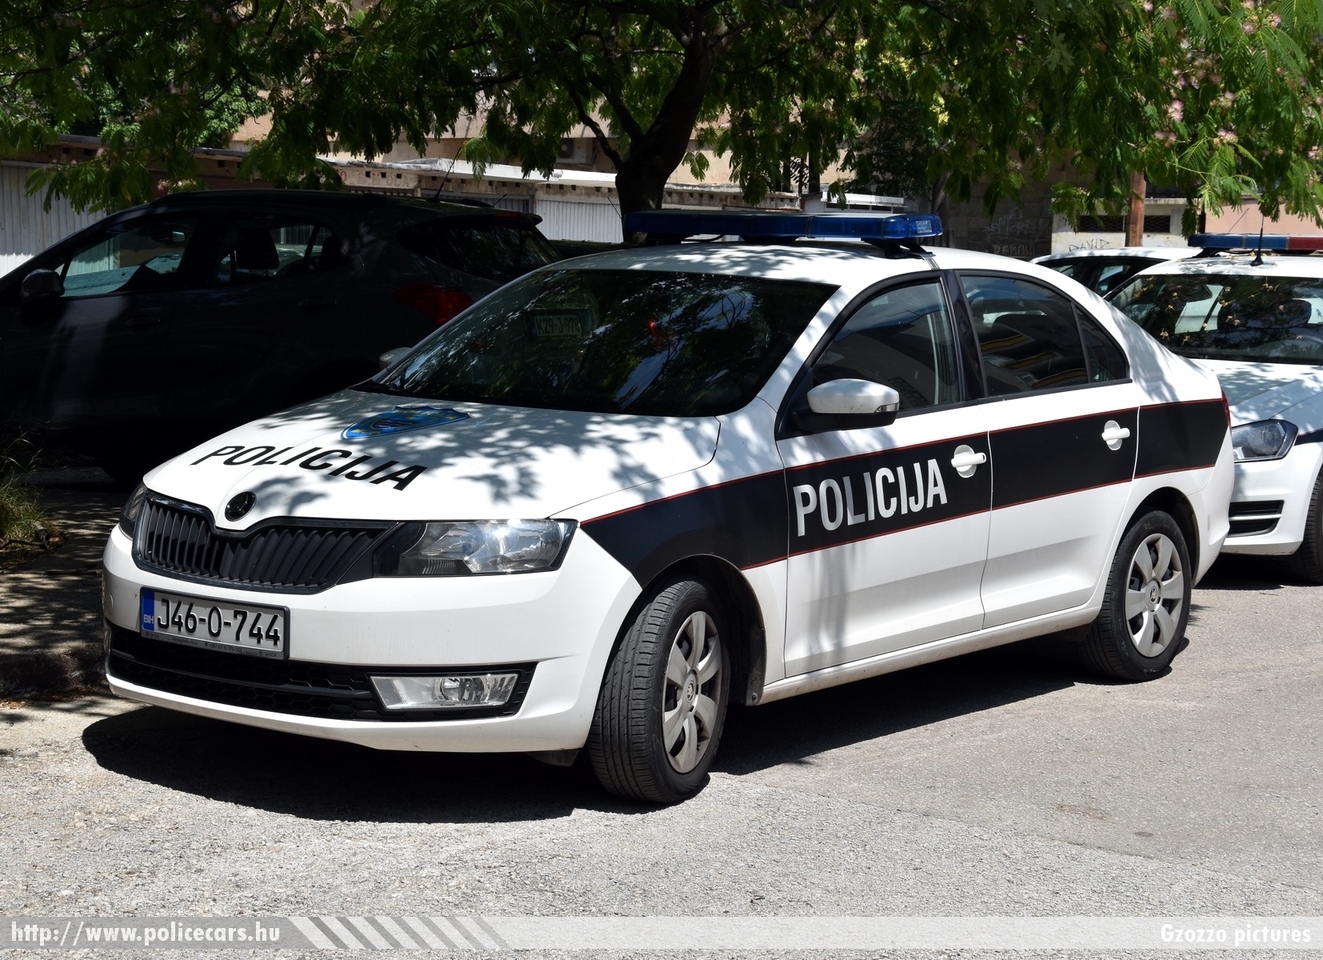 Skoda Rapid, Mostar, fotó: Gzozzo pictures
Keywords: Bosznia-Hercegovina bosnia bosnia-herzegovina bosnyák police policecar rendőrautó rendőr rendőrség